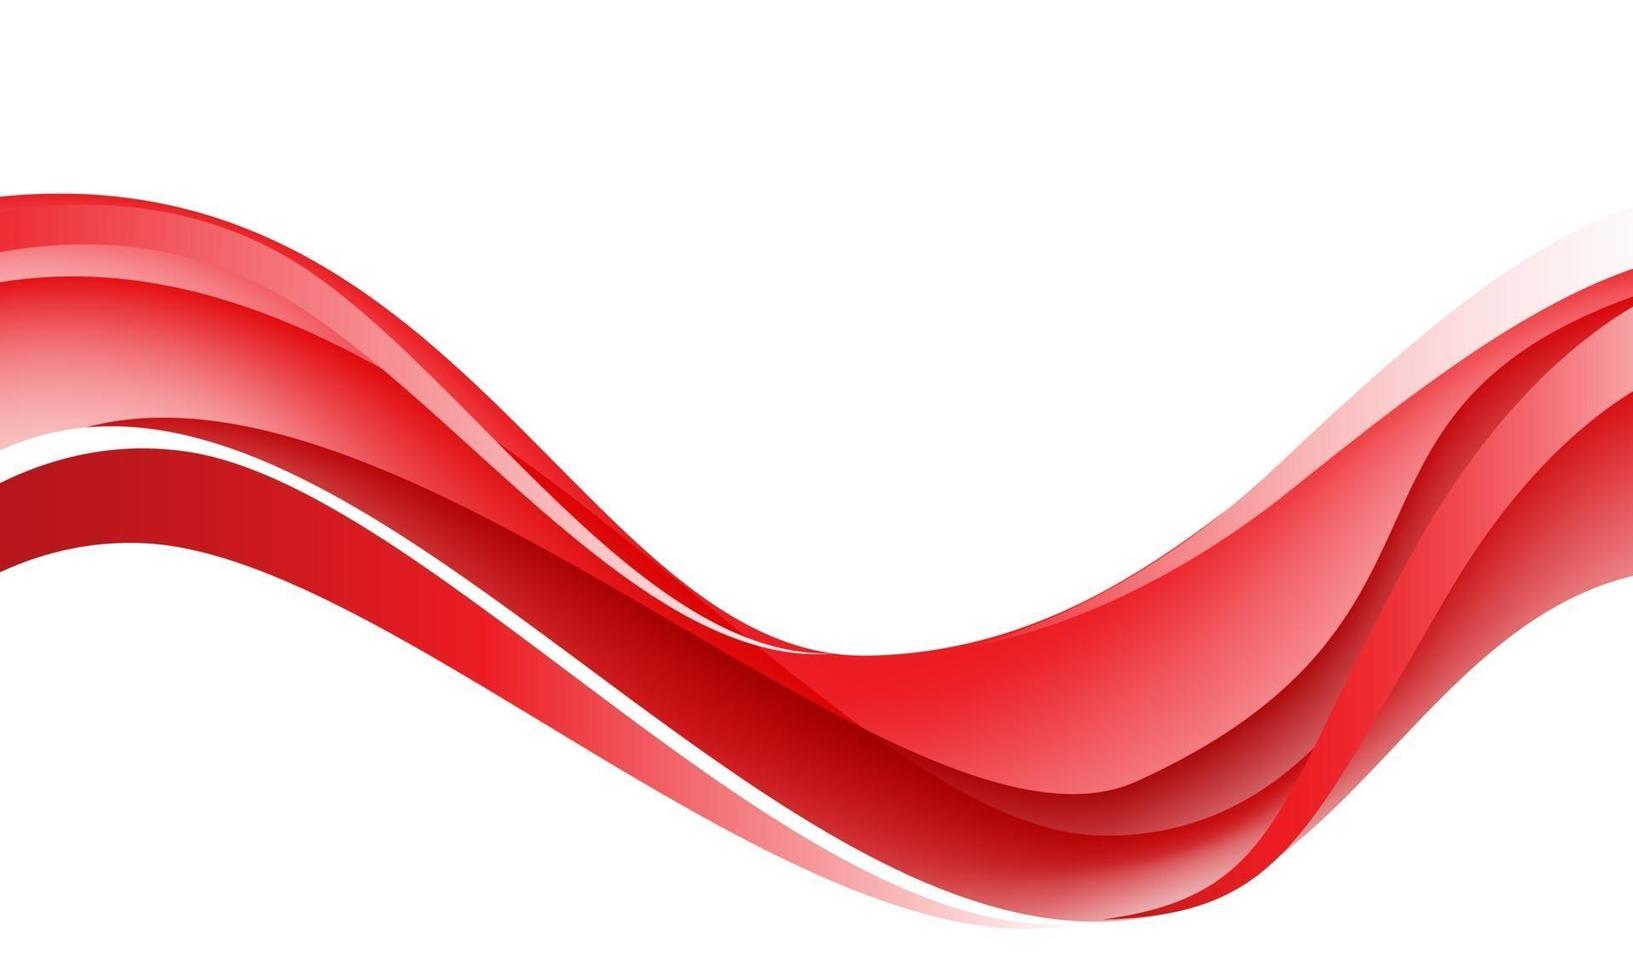 Curva de onda roja abstracta en diseño blanco ilustración de vector de fondo futurista de lujo moderno